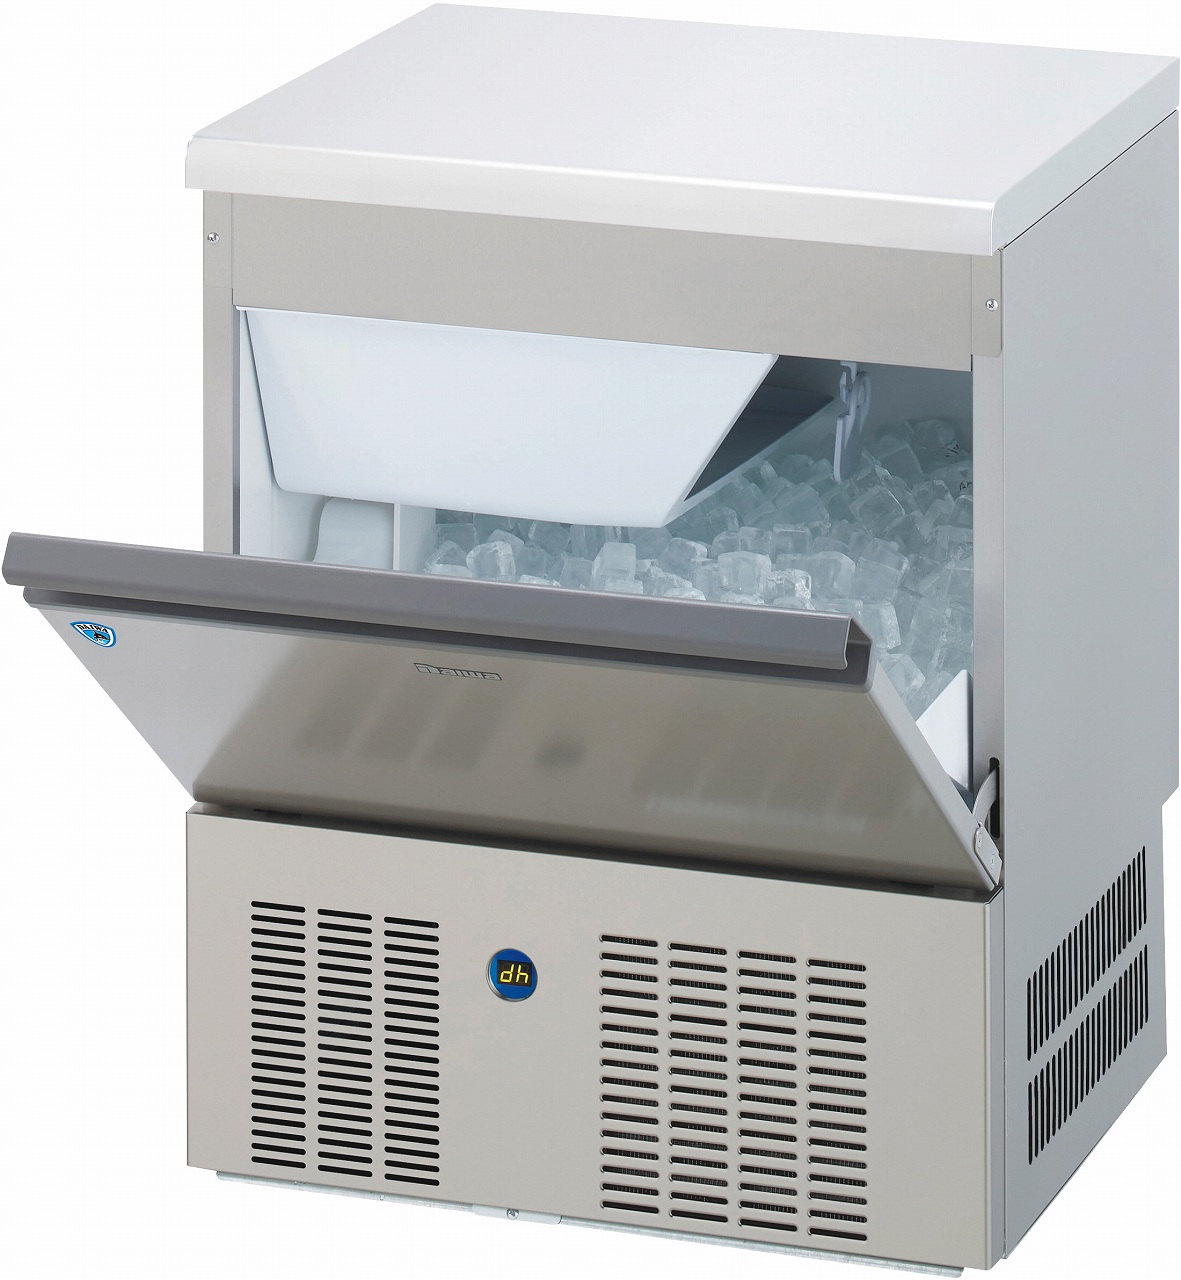 バーチカルタイプ製氷機 LMEシリーズ | 製氷機 | 製品情報 | 大和冷機 